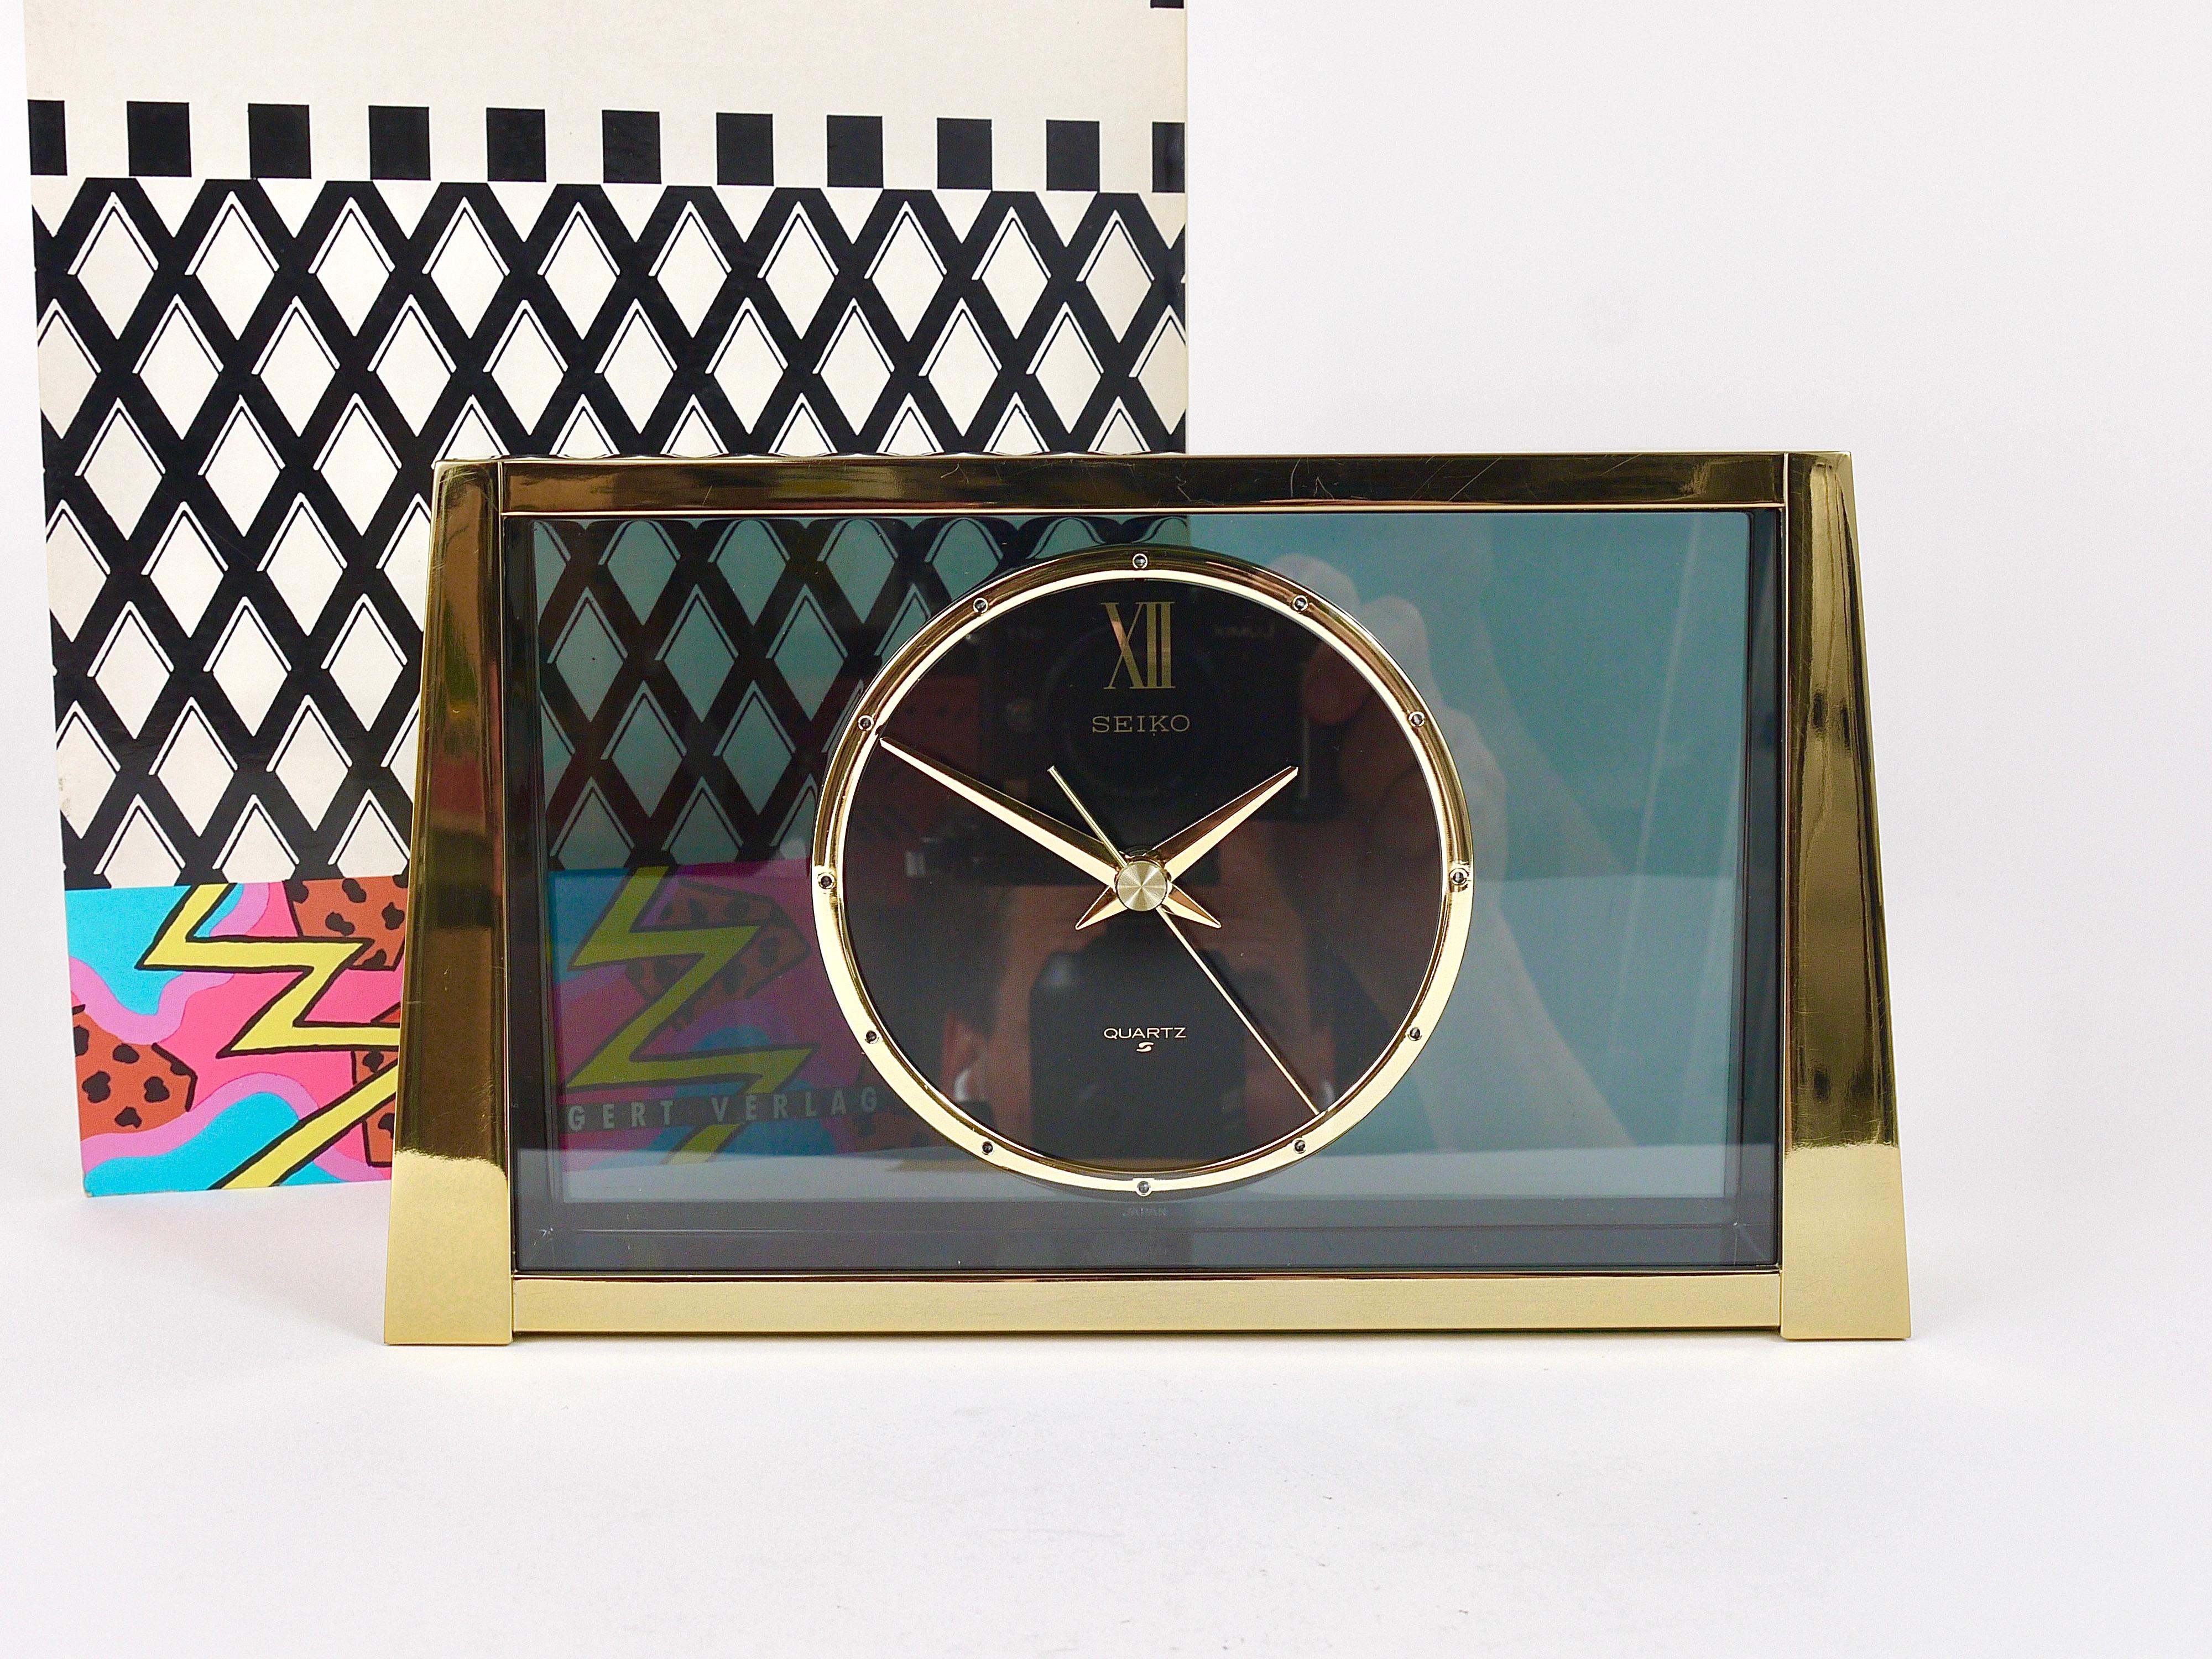 Horloge de bureau / de table / de cheminée décorative Hollywood Regency des années 1980. Elle possède un boîtier en laiton brossé avec une façade polie miroir, de jolies poignées et index dorés et un cadran d'horloge transparent gris fumé. Exécuté